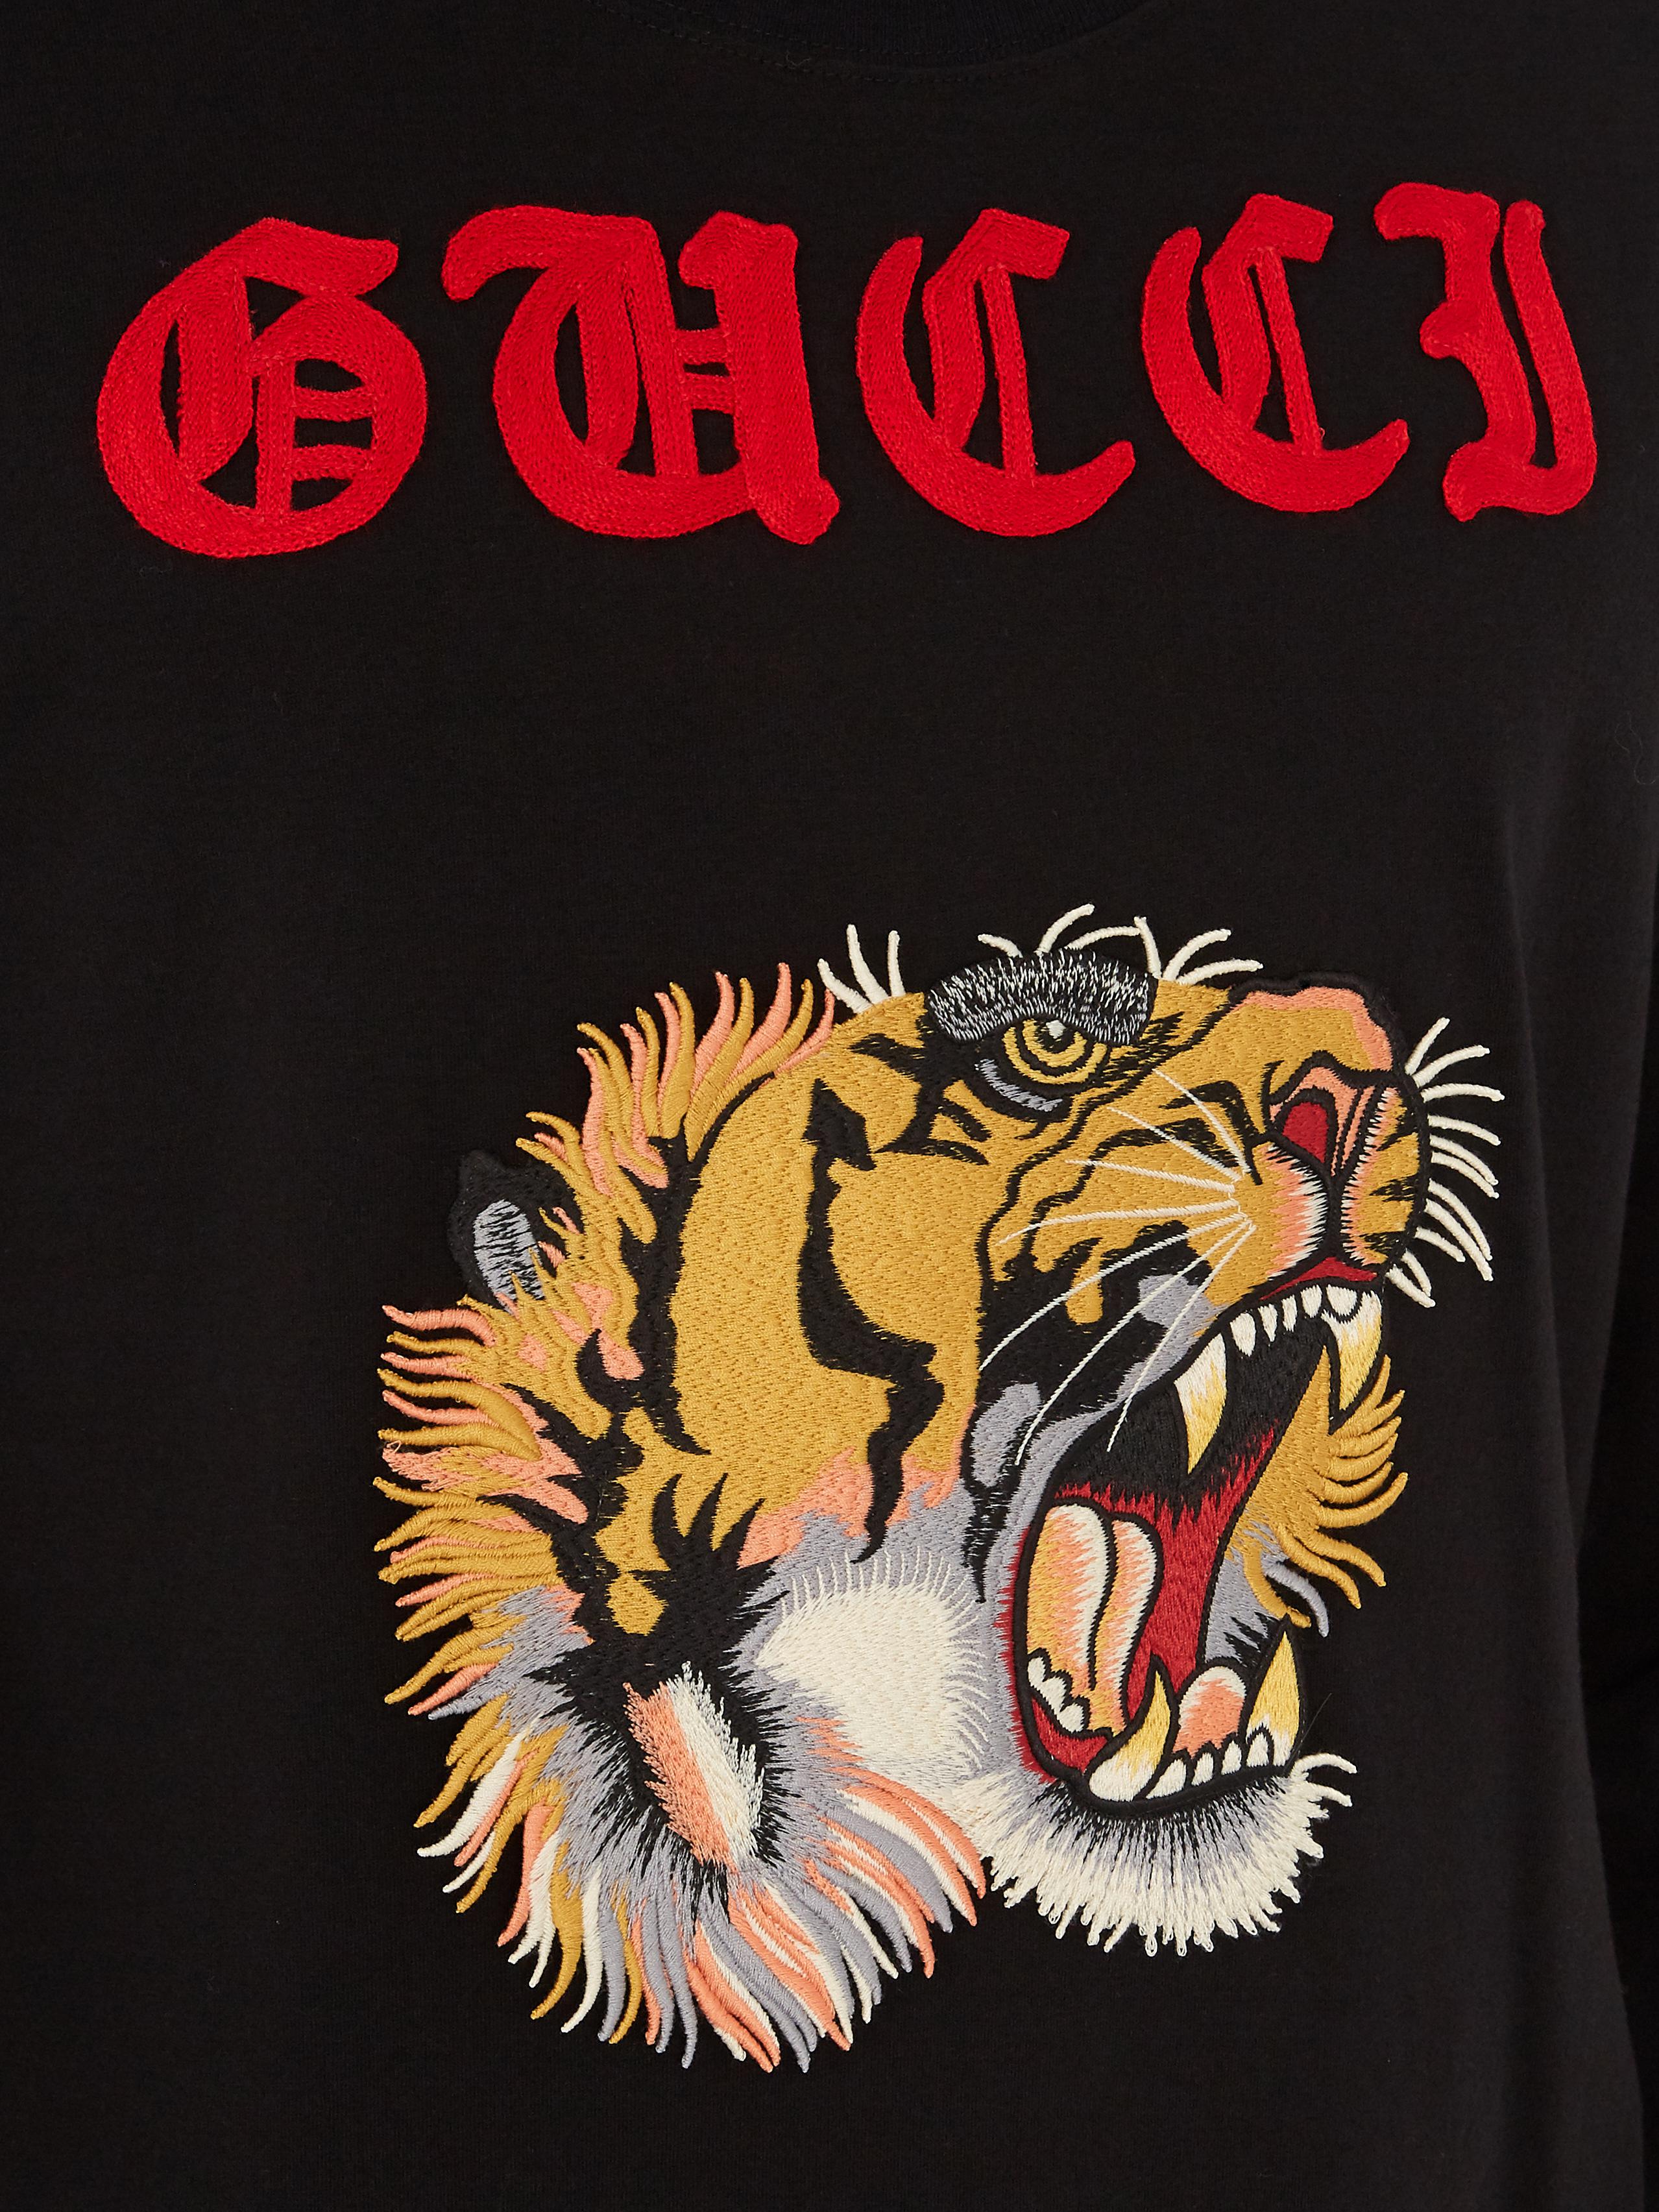 gucci tiger shirt black, OFF 74%,www 